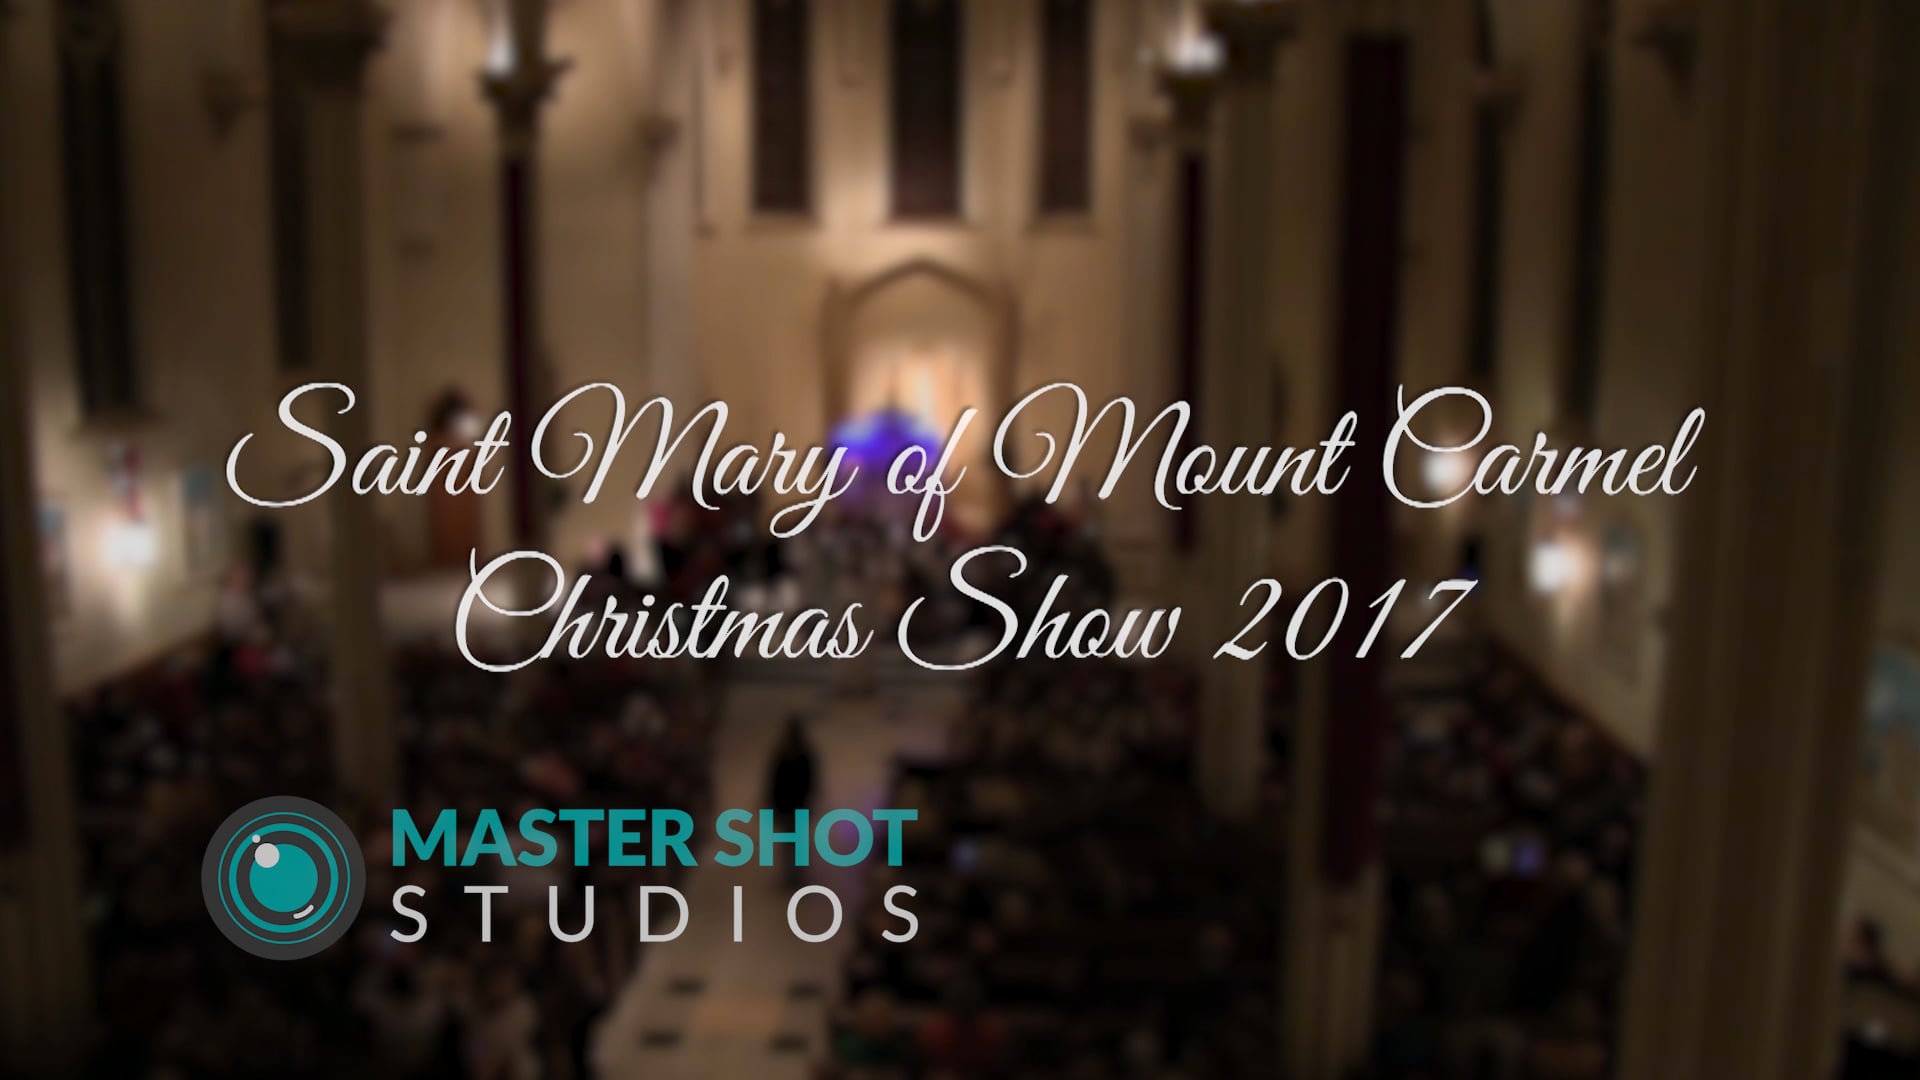 Saint Mary of Mount Carmel Christmas Show 2017 Highlights